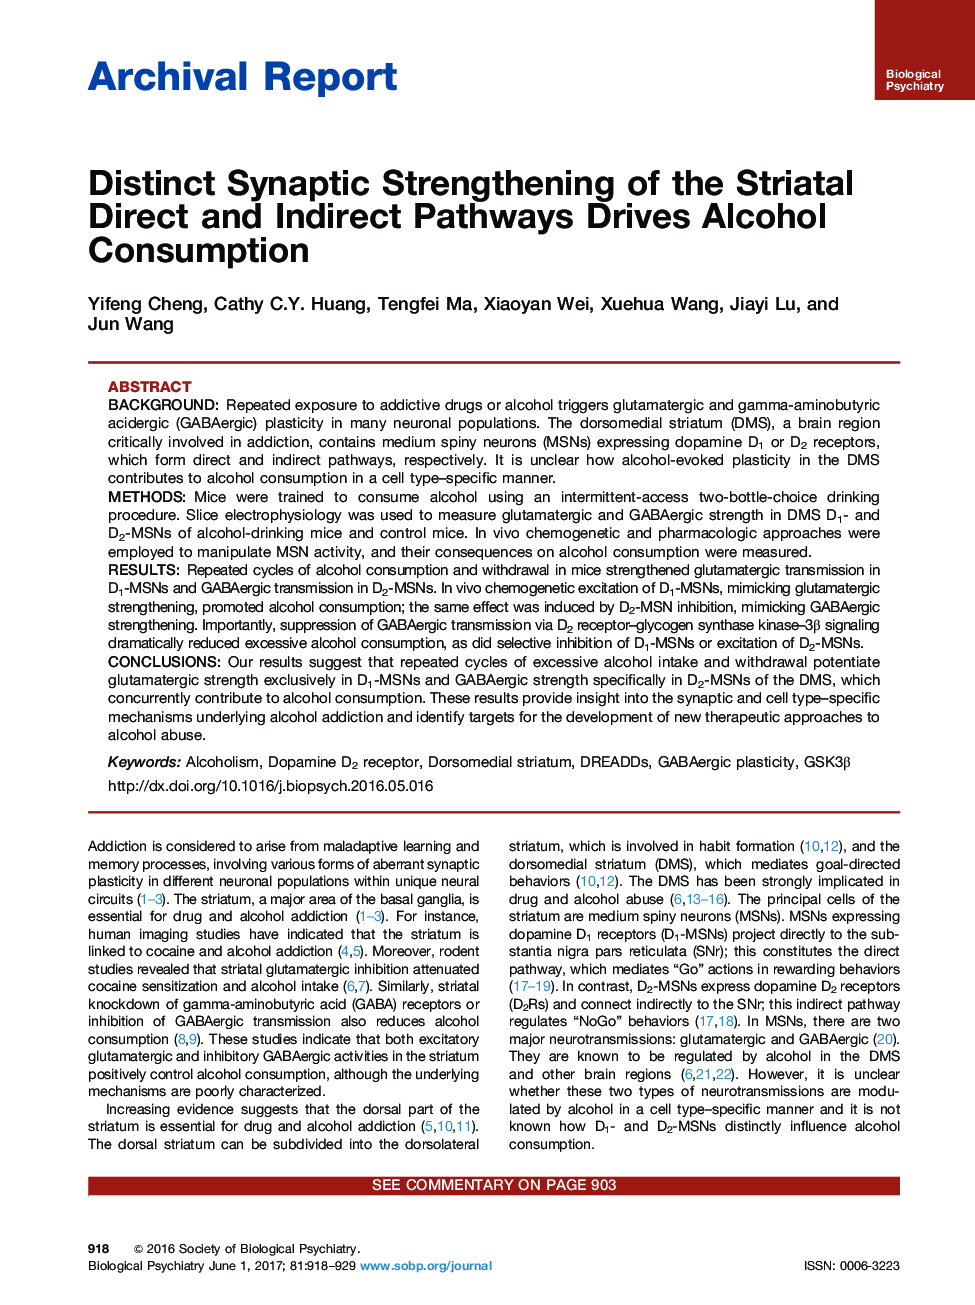 تقویت سیناپتیس از مسیرهای مستقیم و غیر مستقیم، باعث افزایش مصرف الکل می شود 